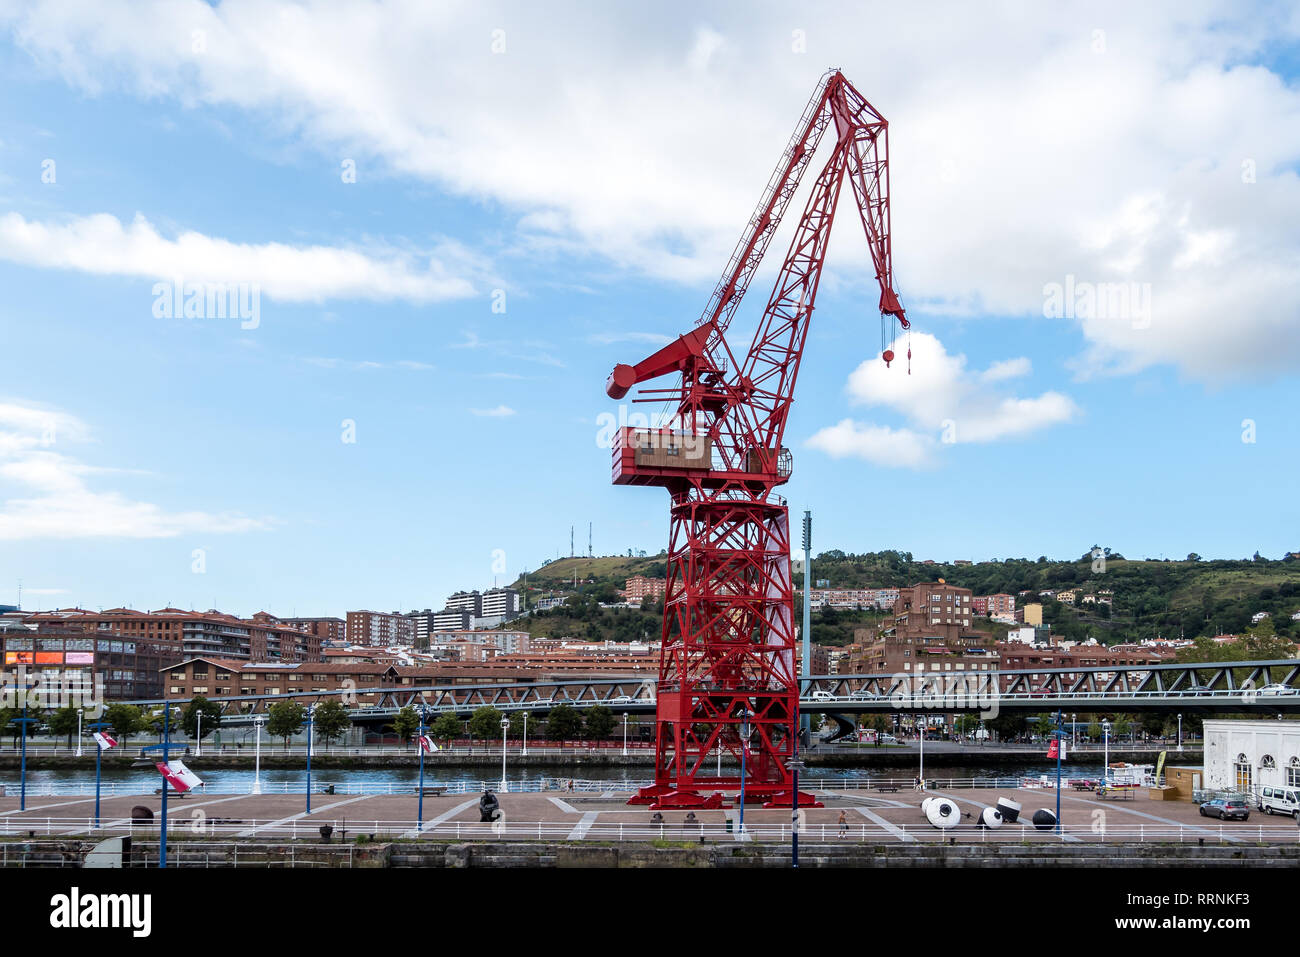 Museum Museo Maritimo Ria de Bilbao en Espagne. Il s'agit d'une exposition maritime de la ville. Il présente des expositions sur l'expédition, la ville historique et la développer Banque D'Images